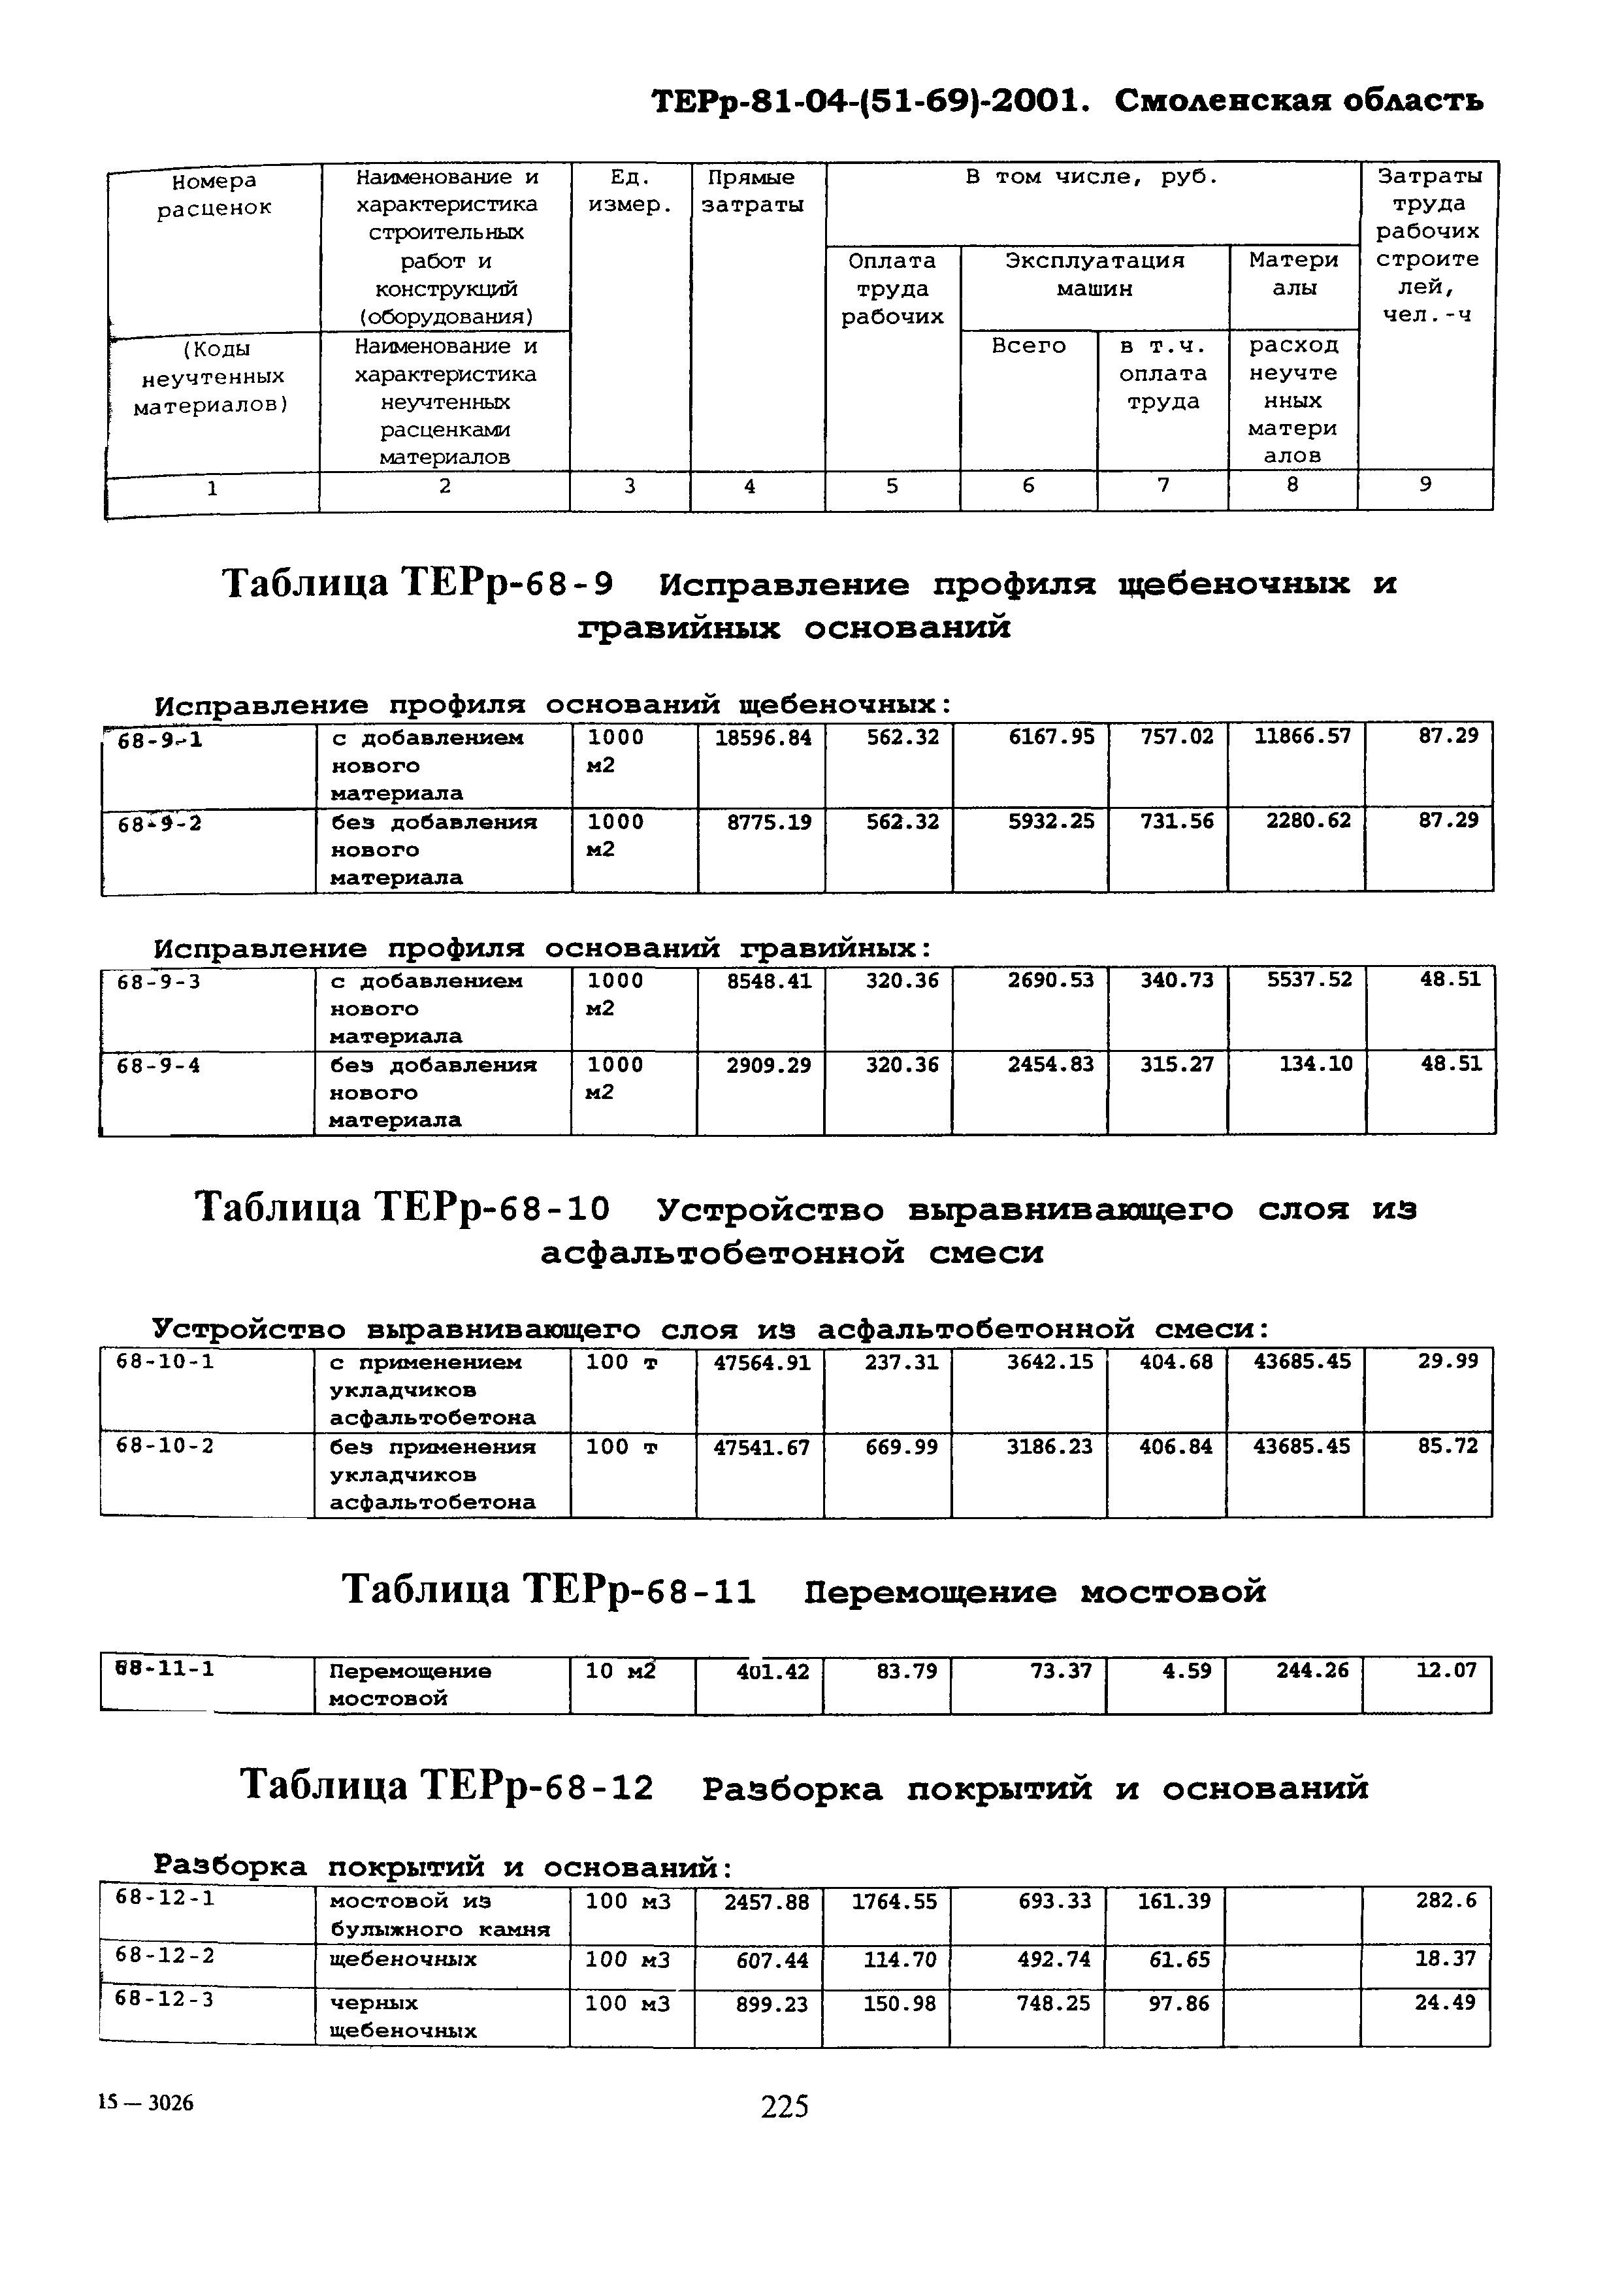 ТЕРр Смоленской области 2001-68